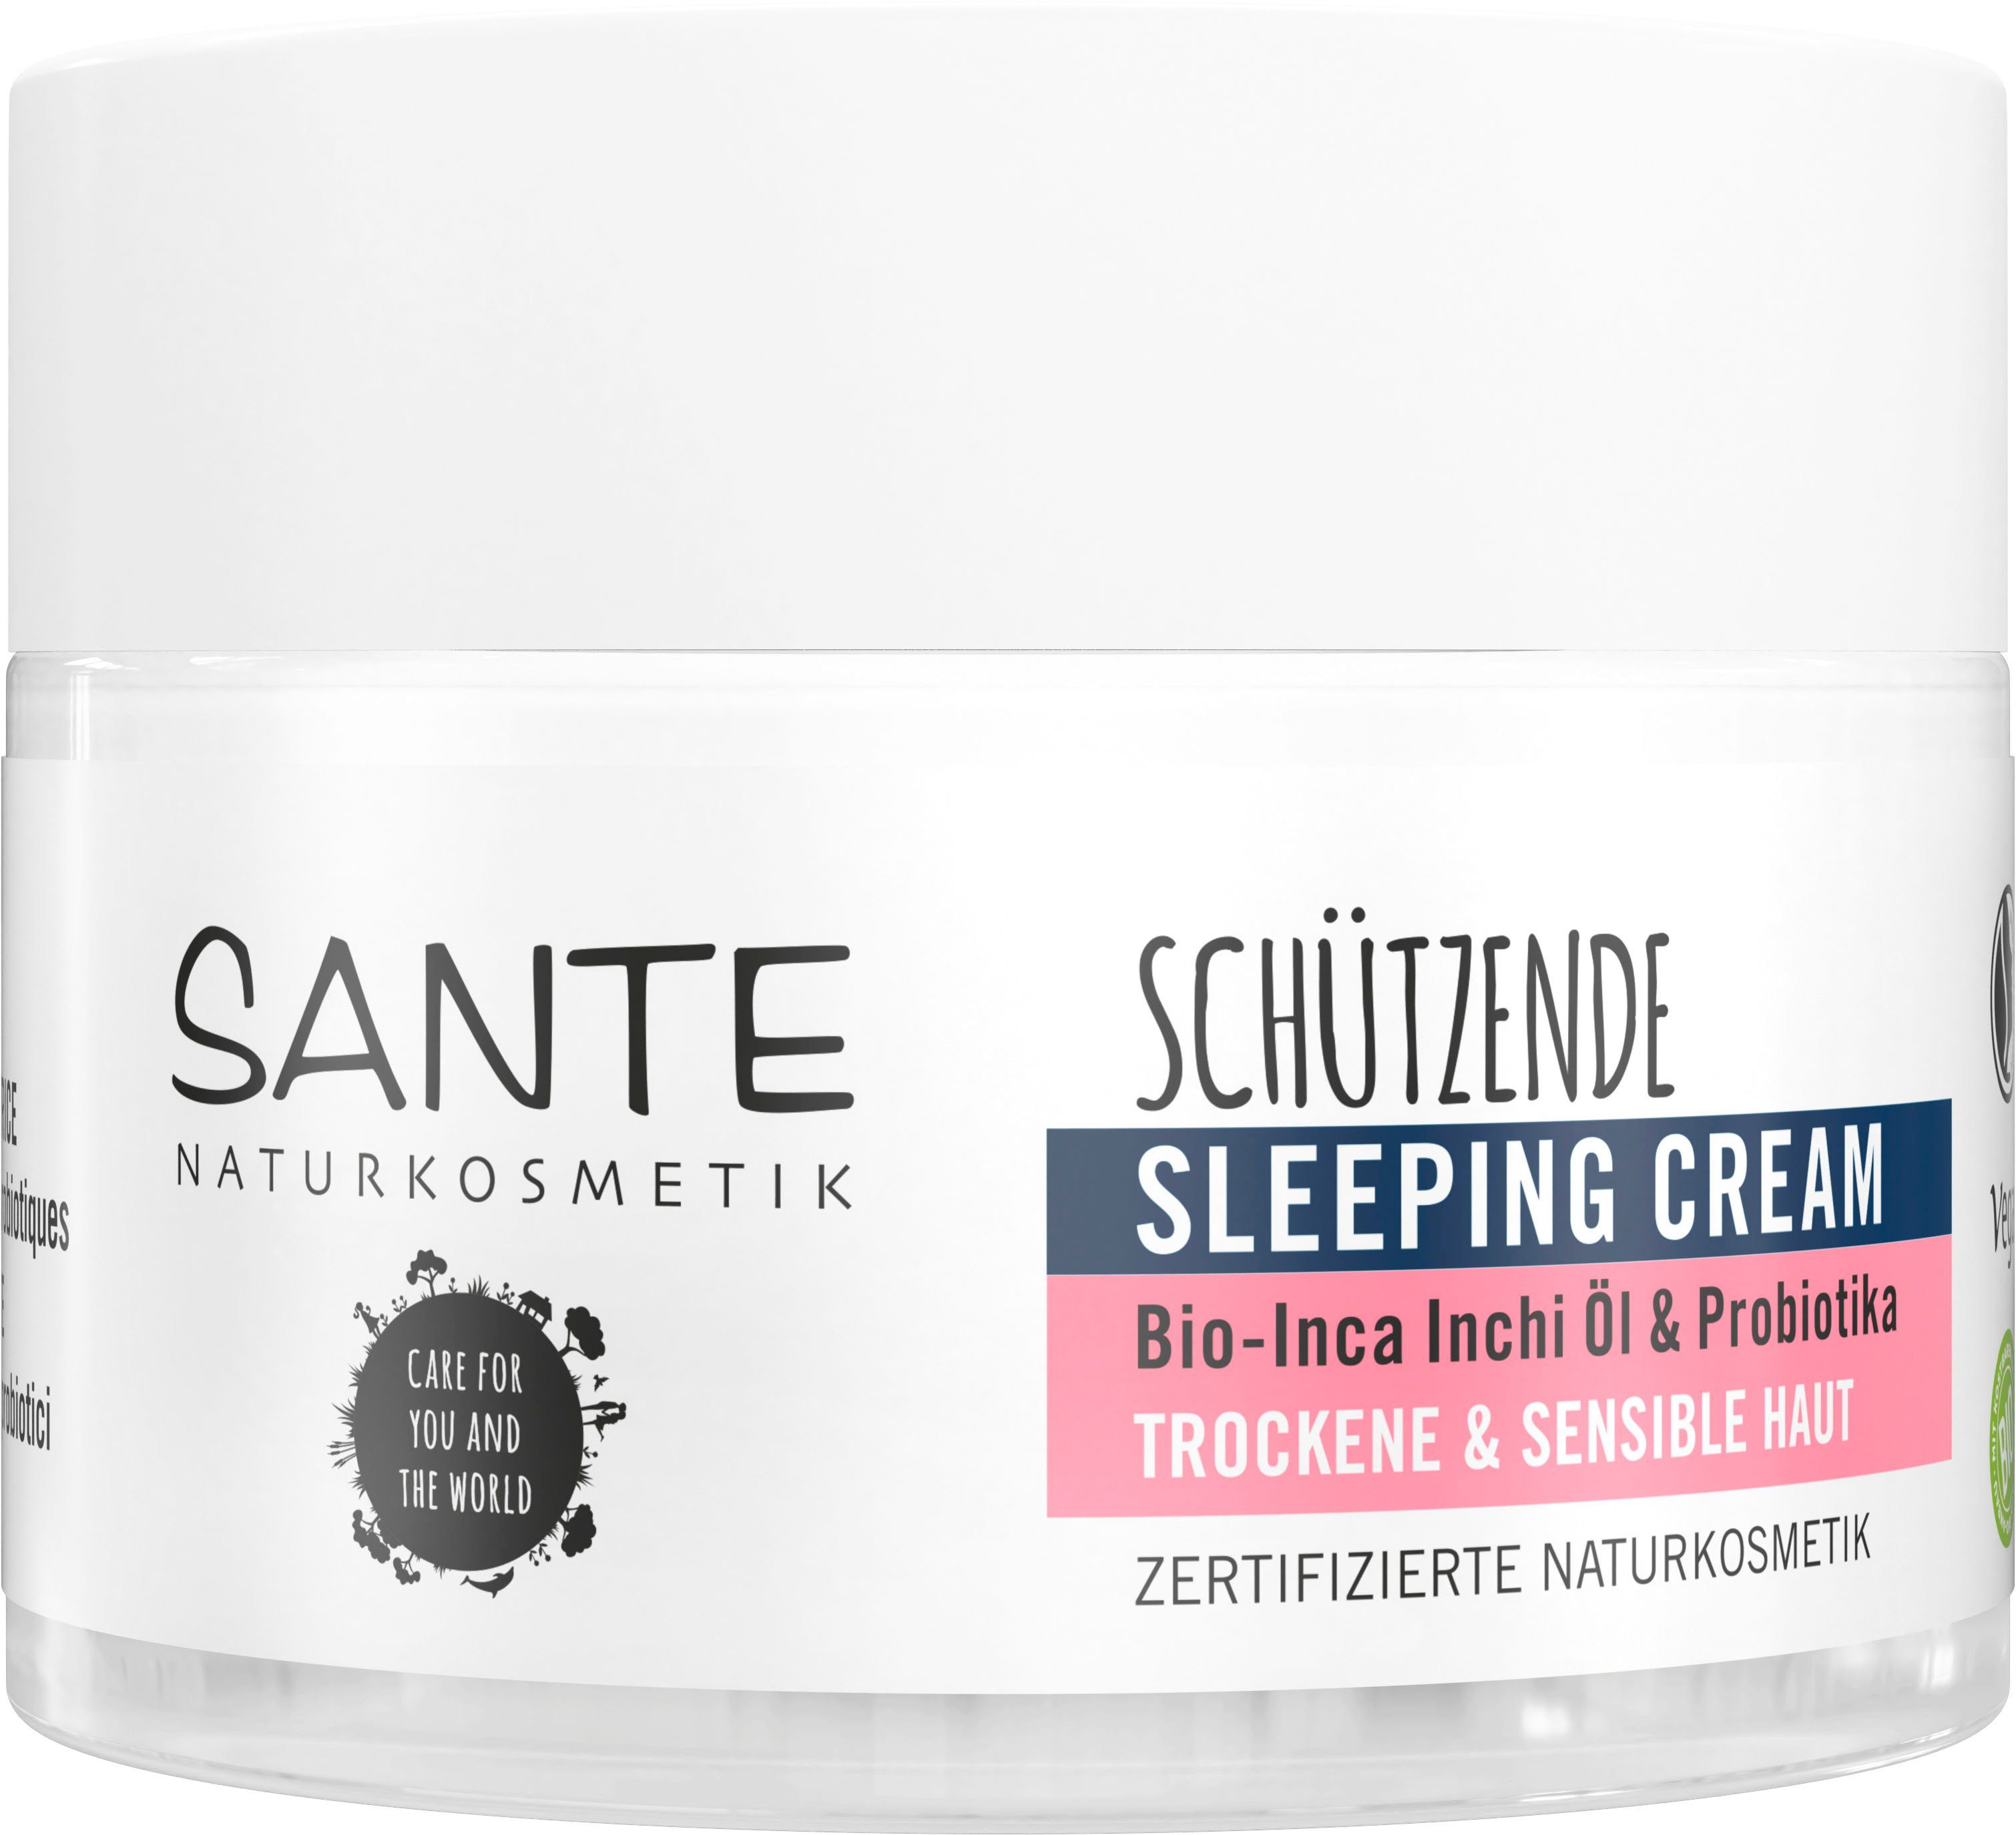 SANTE Gesichtslotion Schützende Sleeping Cream | Tagescremes